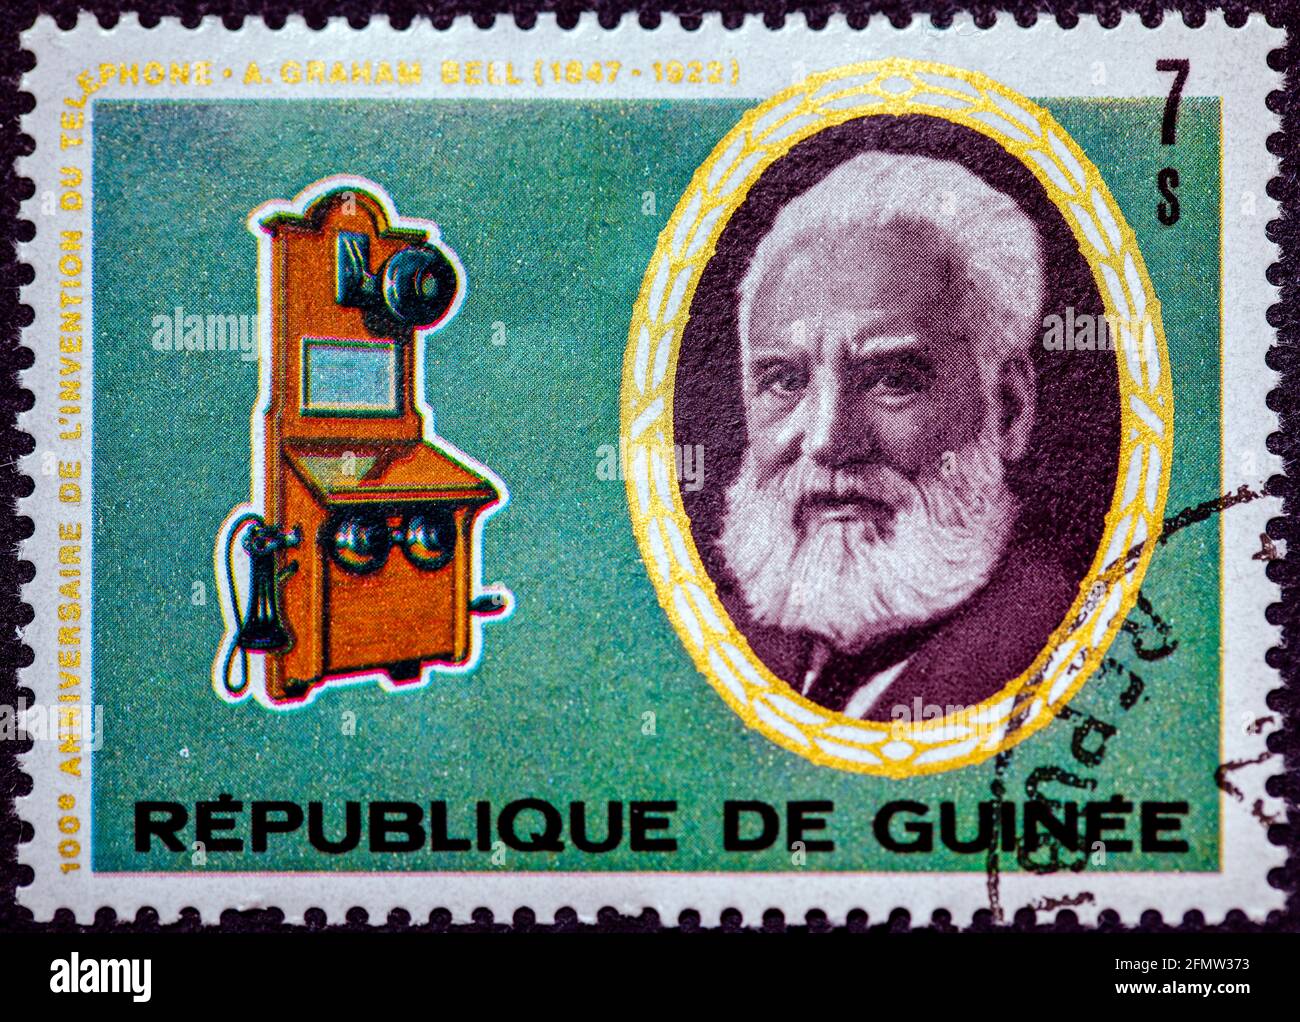 GUINÉE - VERS 1976 : un timbre imprimé en Guinée montre le portrait d'Alexander Graham Bell et de Telephone Switchboard operato, série, vers 1976 Banque D'Images